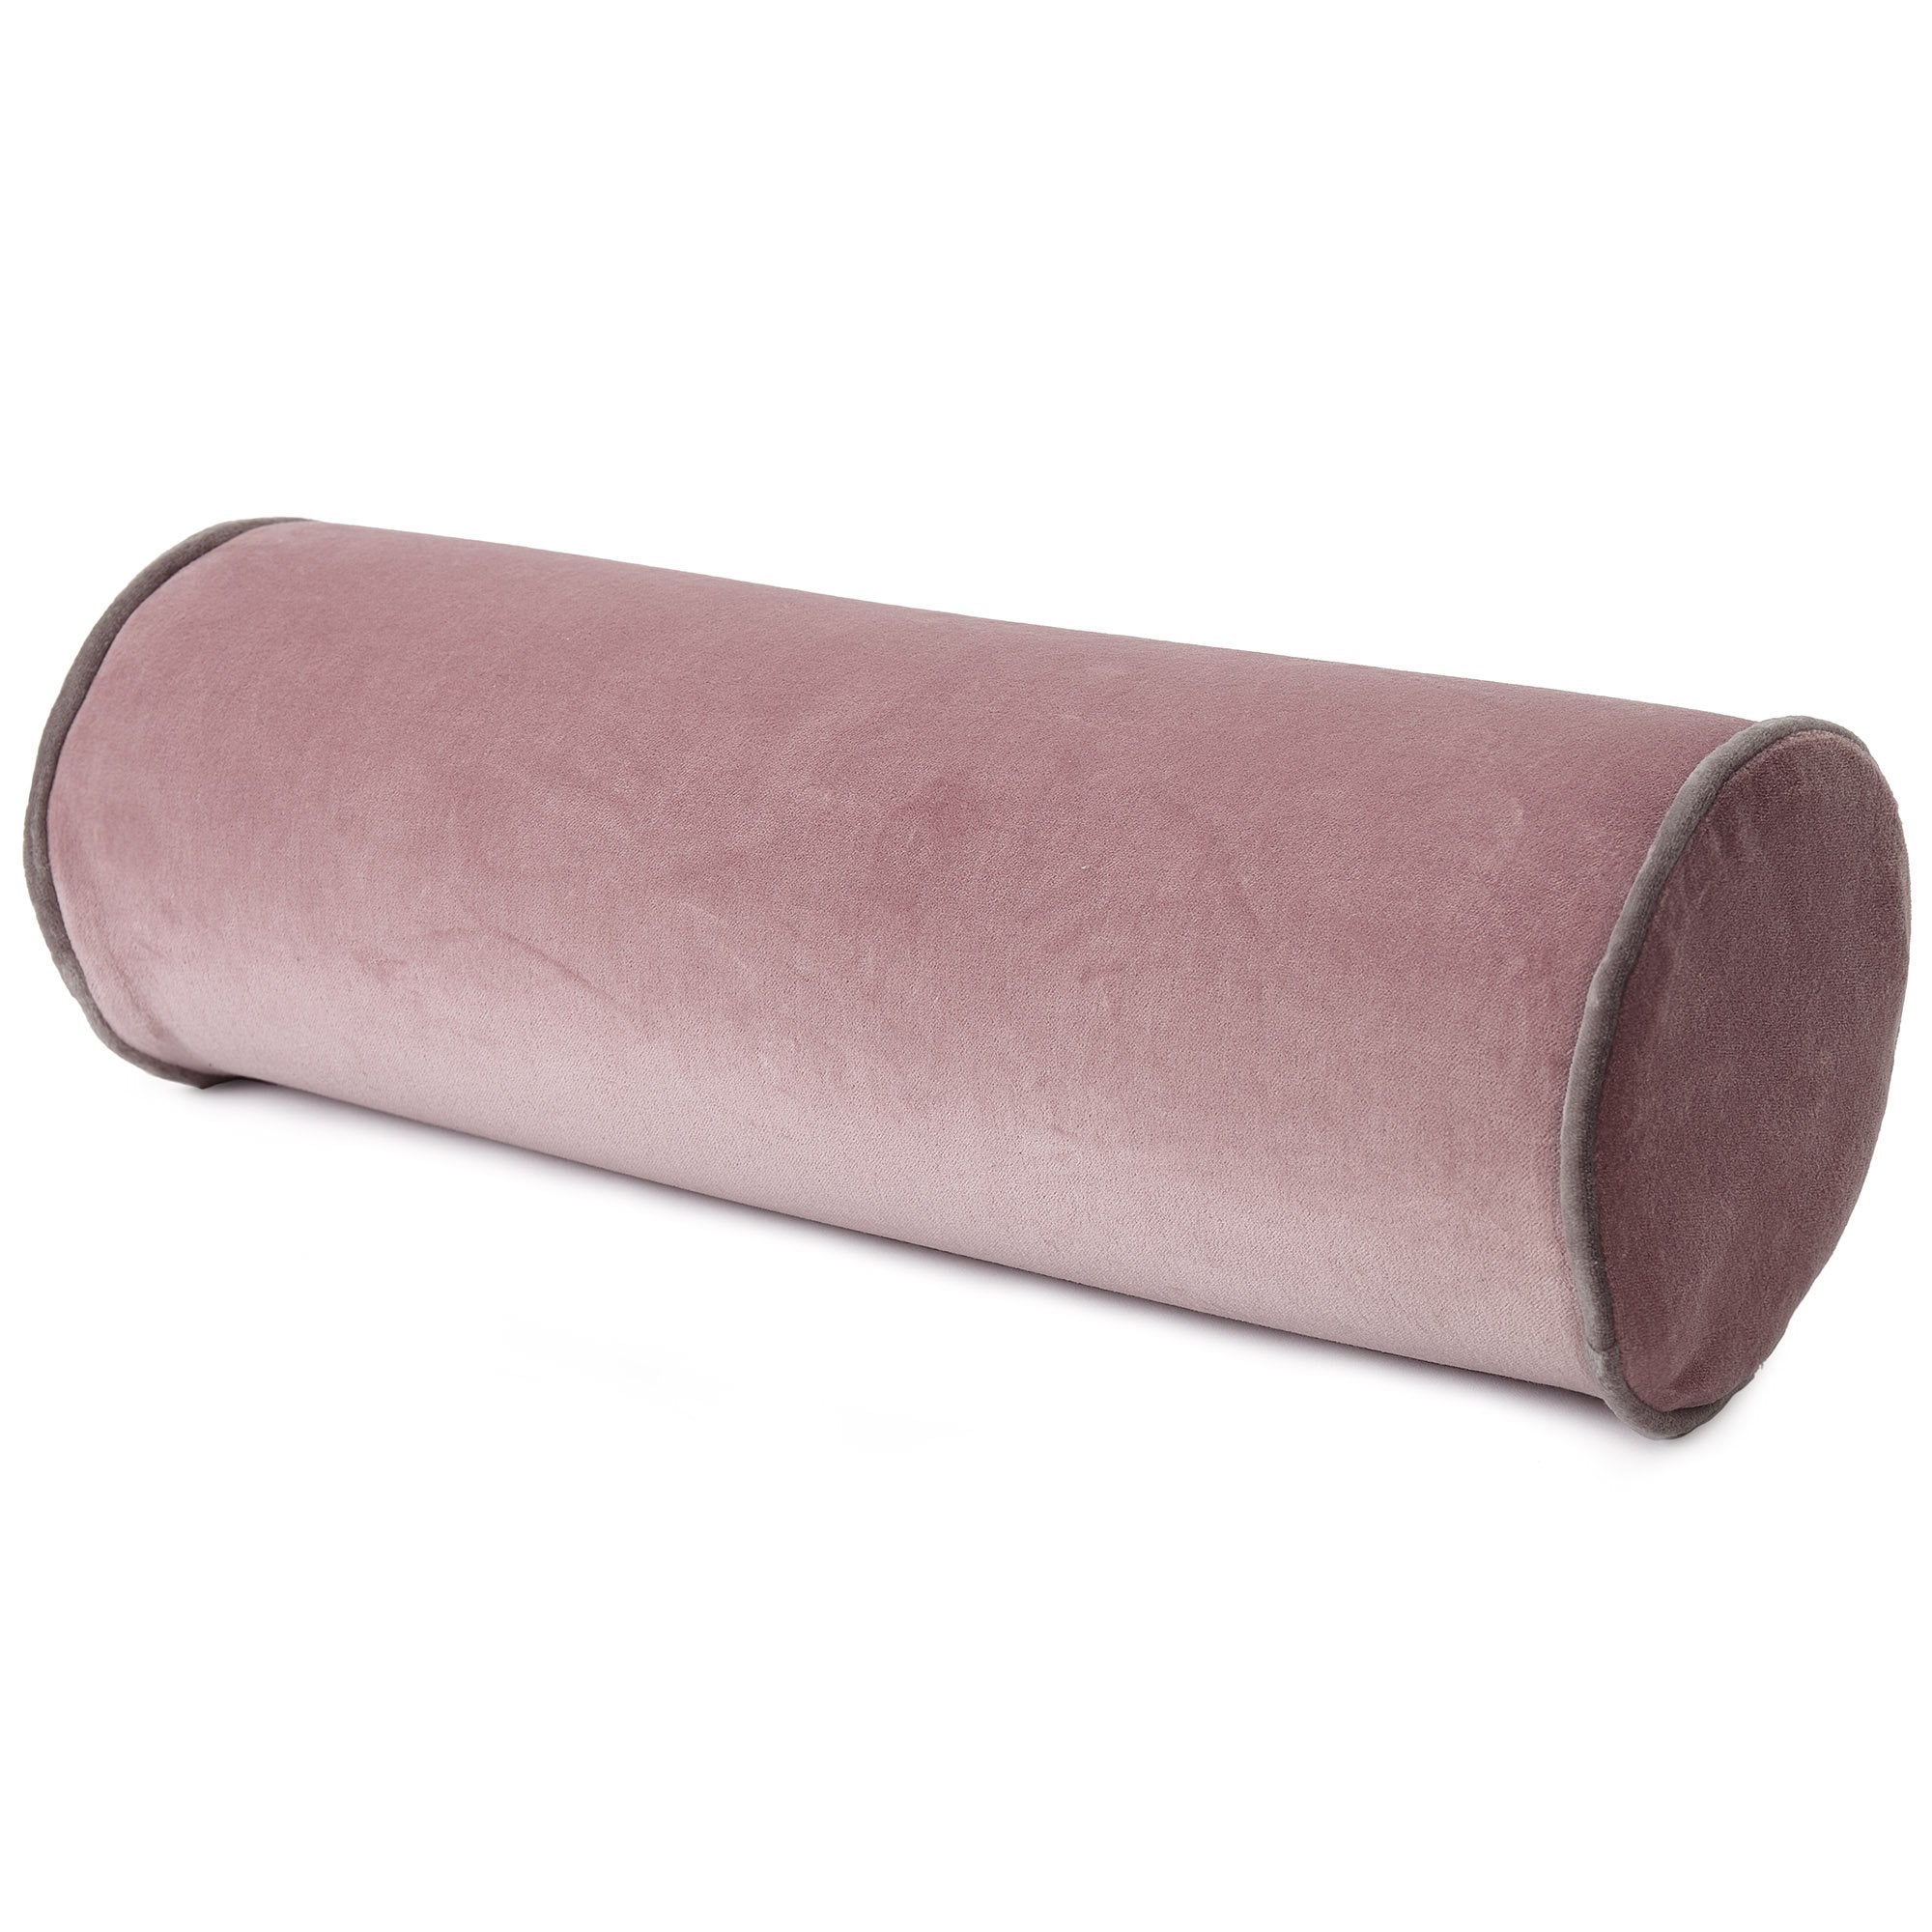 bolster pillow pink